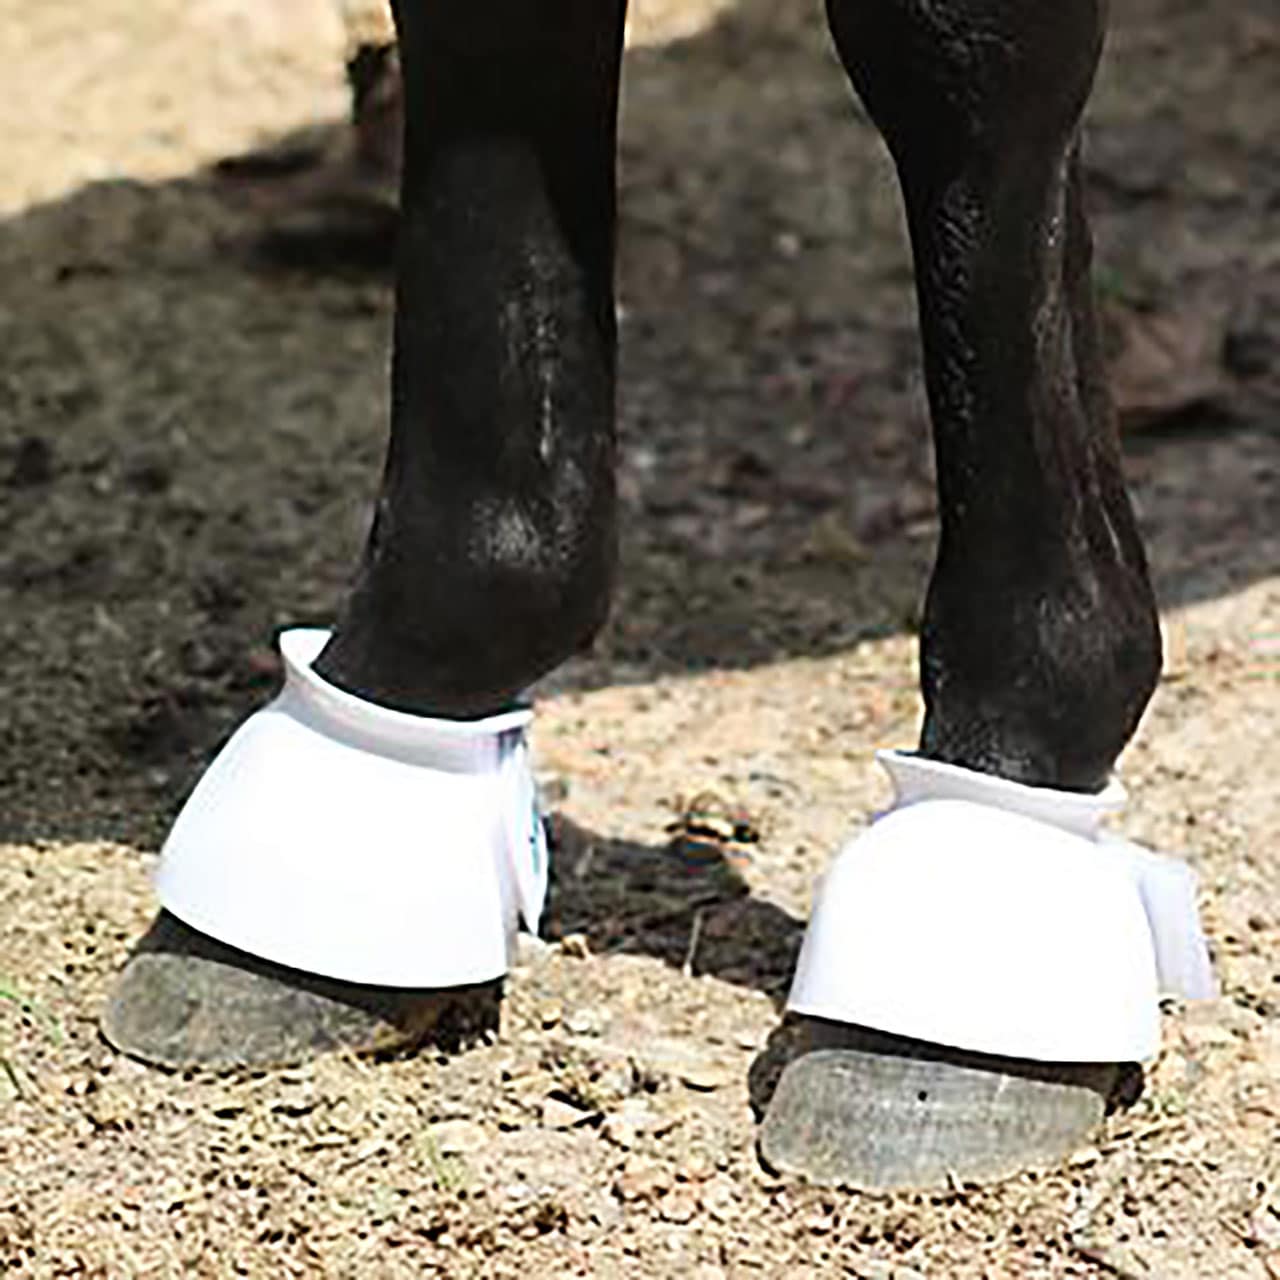 Regular Bell Boots for Horses, DAVIS Plastic